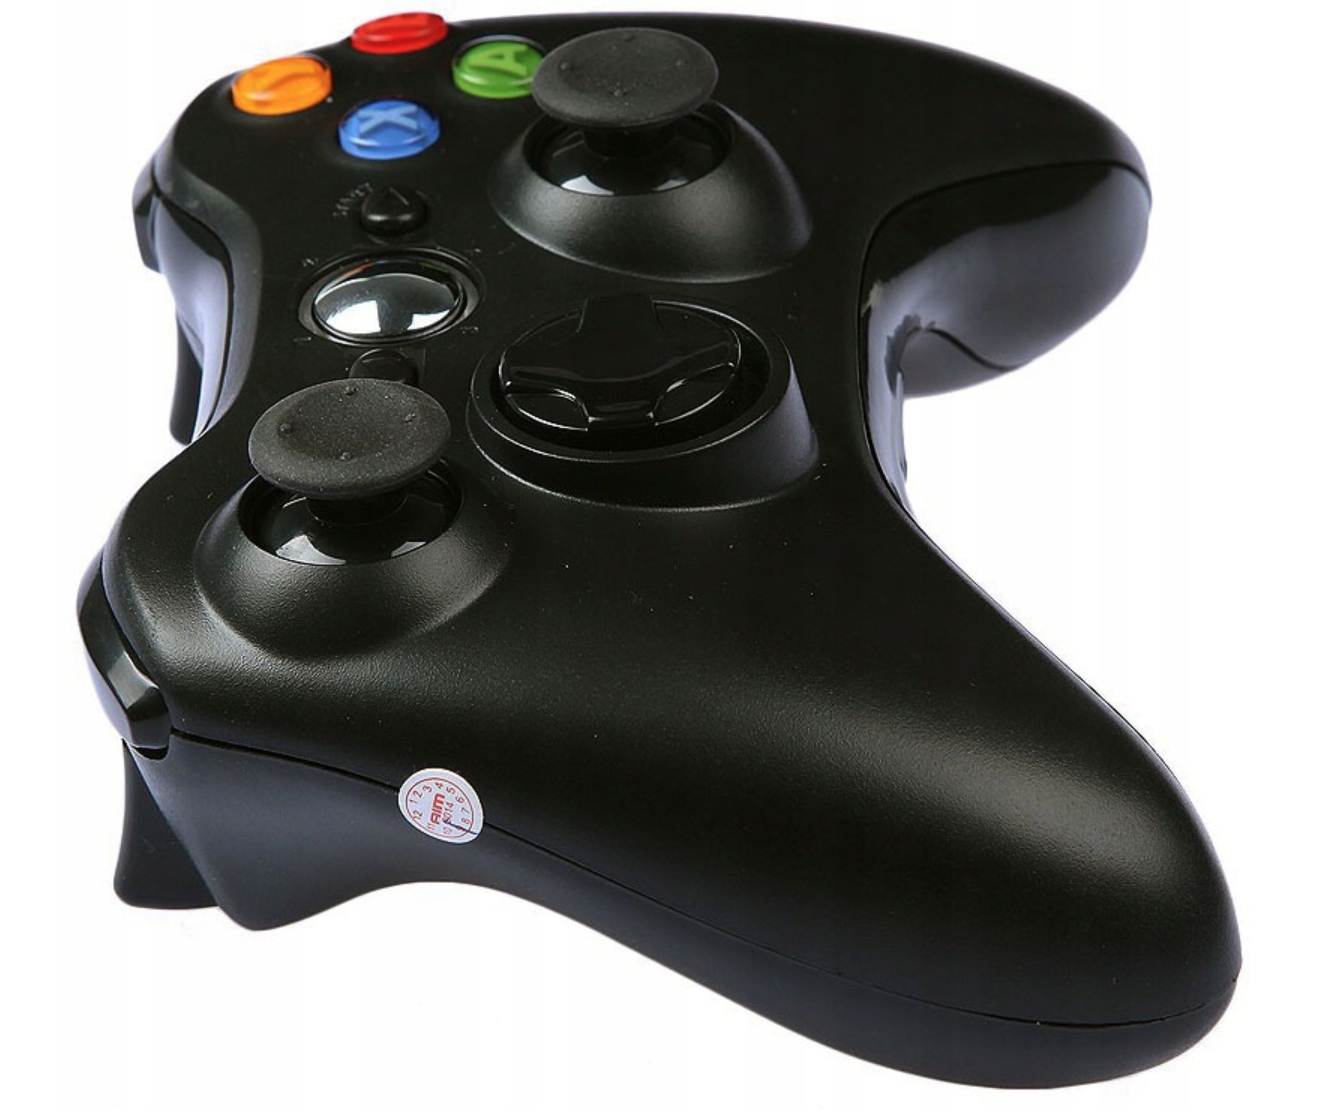 Купить хороший джойстик. Джойстик Xbox 360. Геймпад Xbox 360 Controller. Джойстик Xbox 360 беспроводной. Геймпад для Xbox 360 (черный).